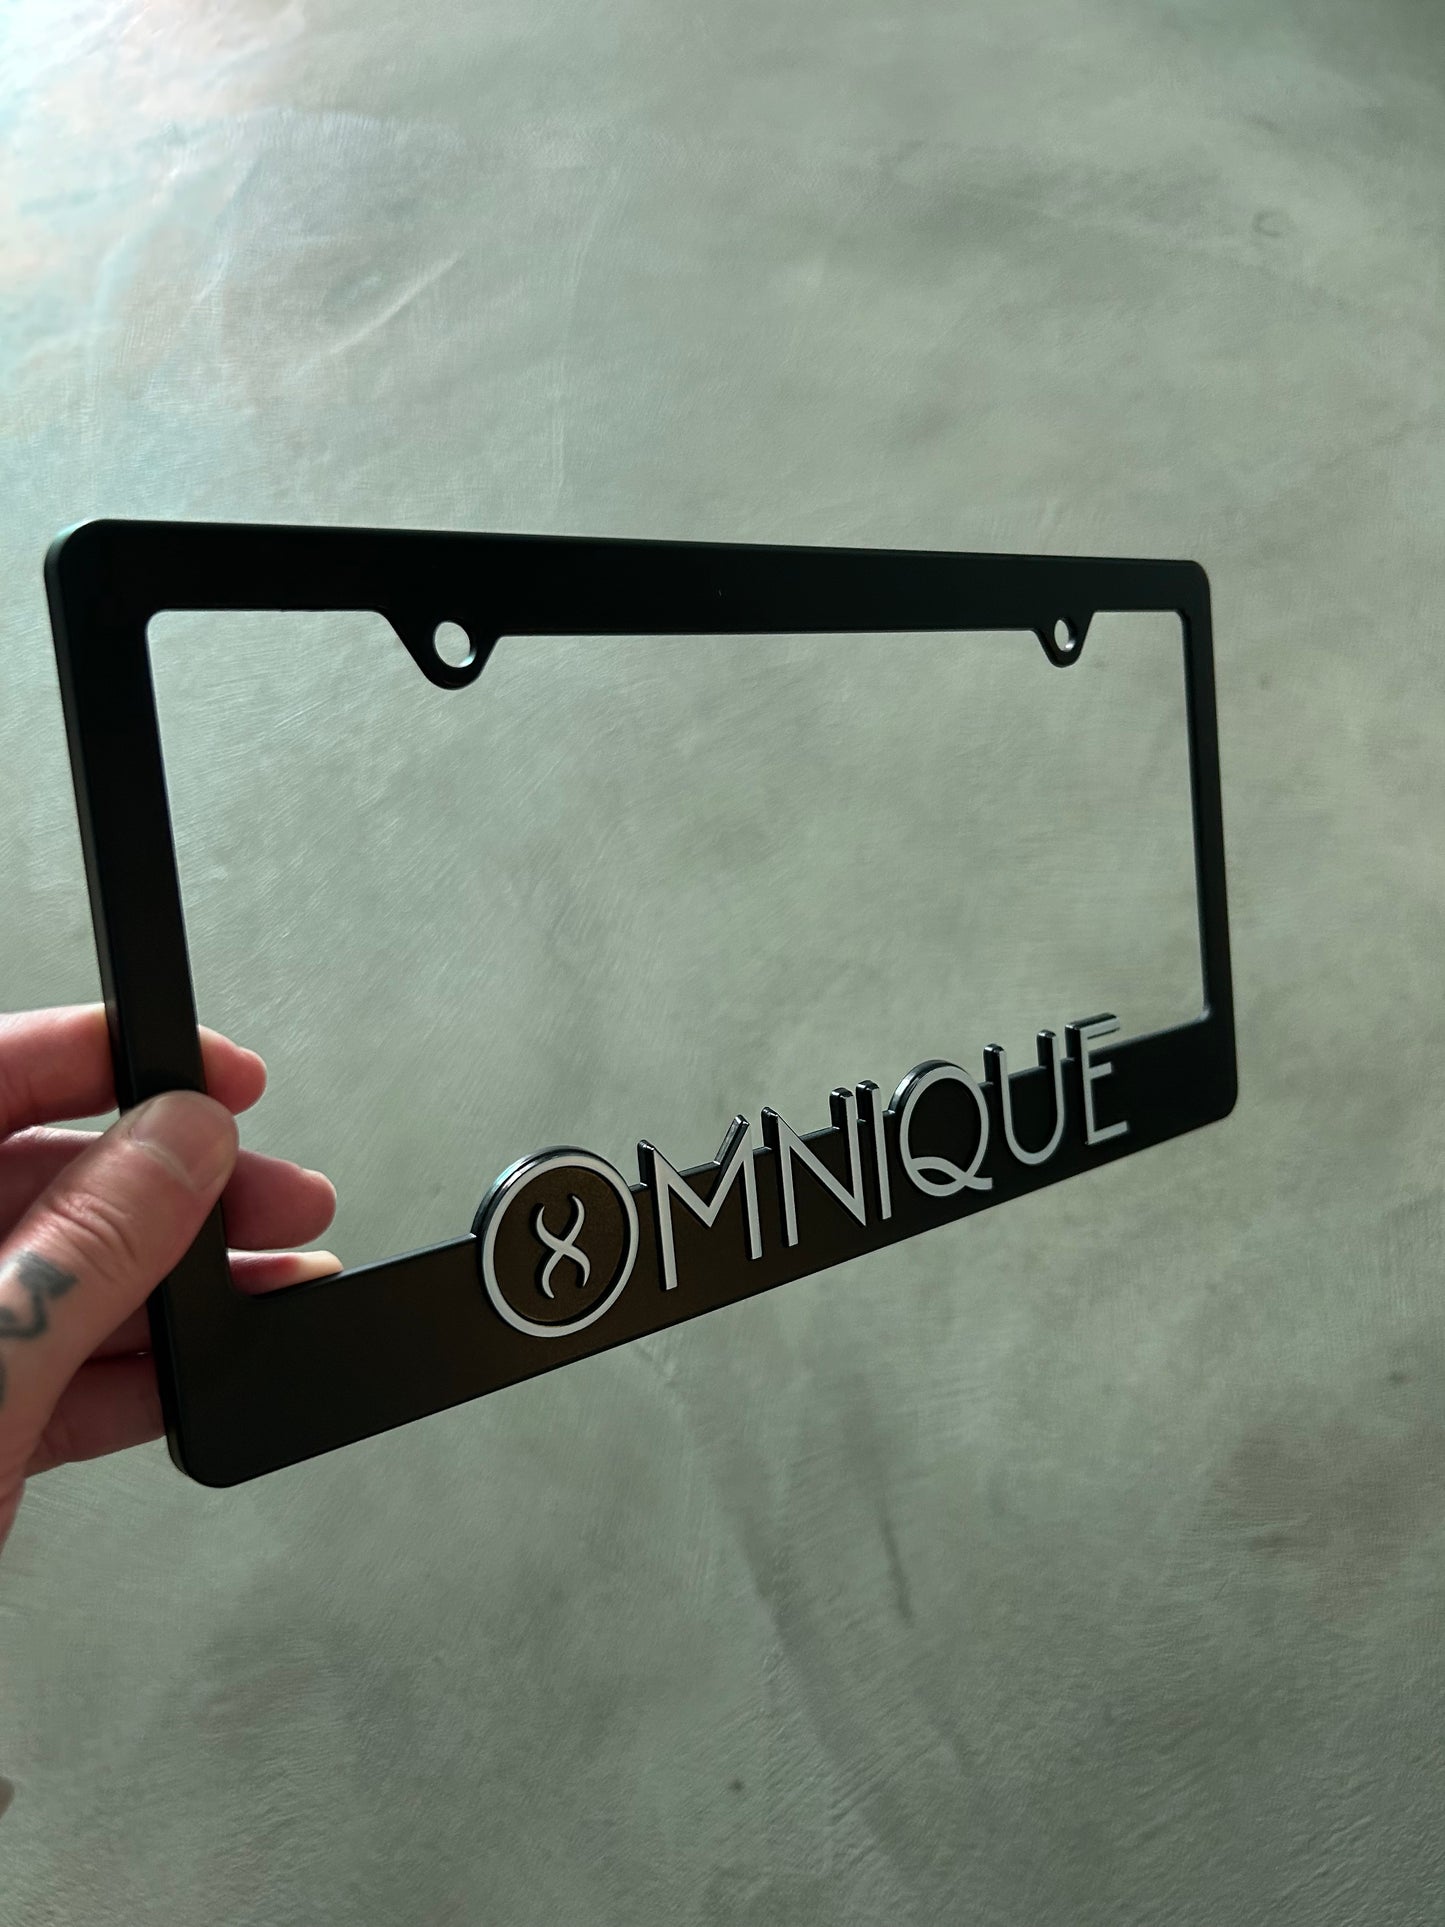 Omnique License Plate Frame